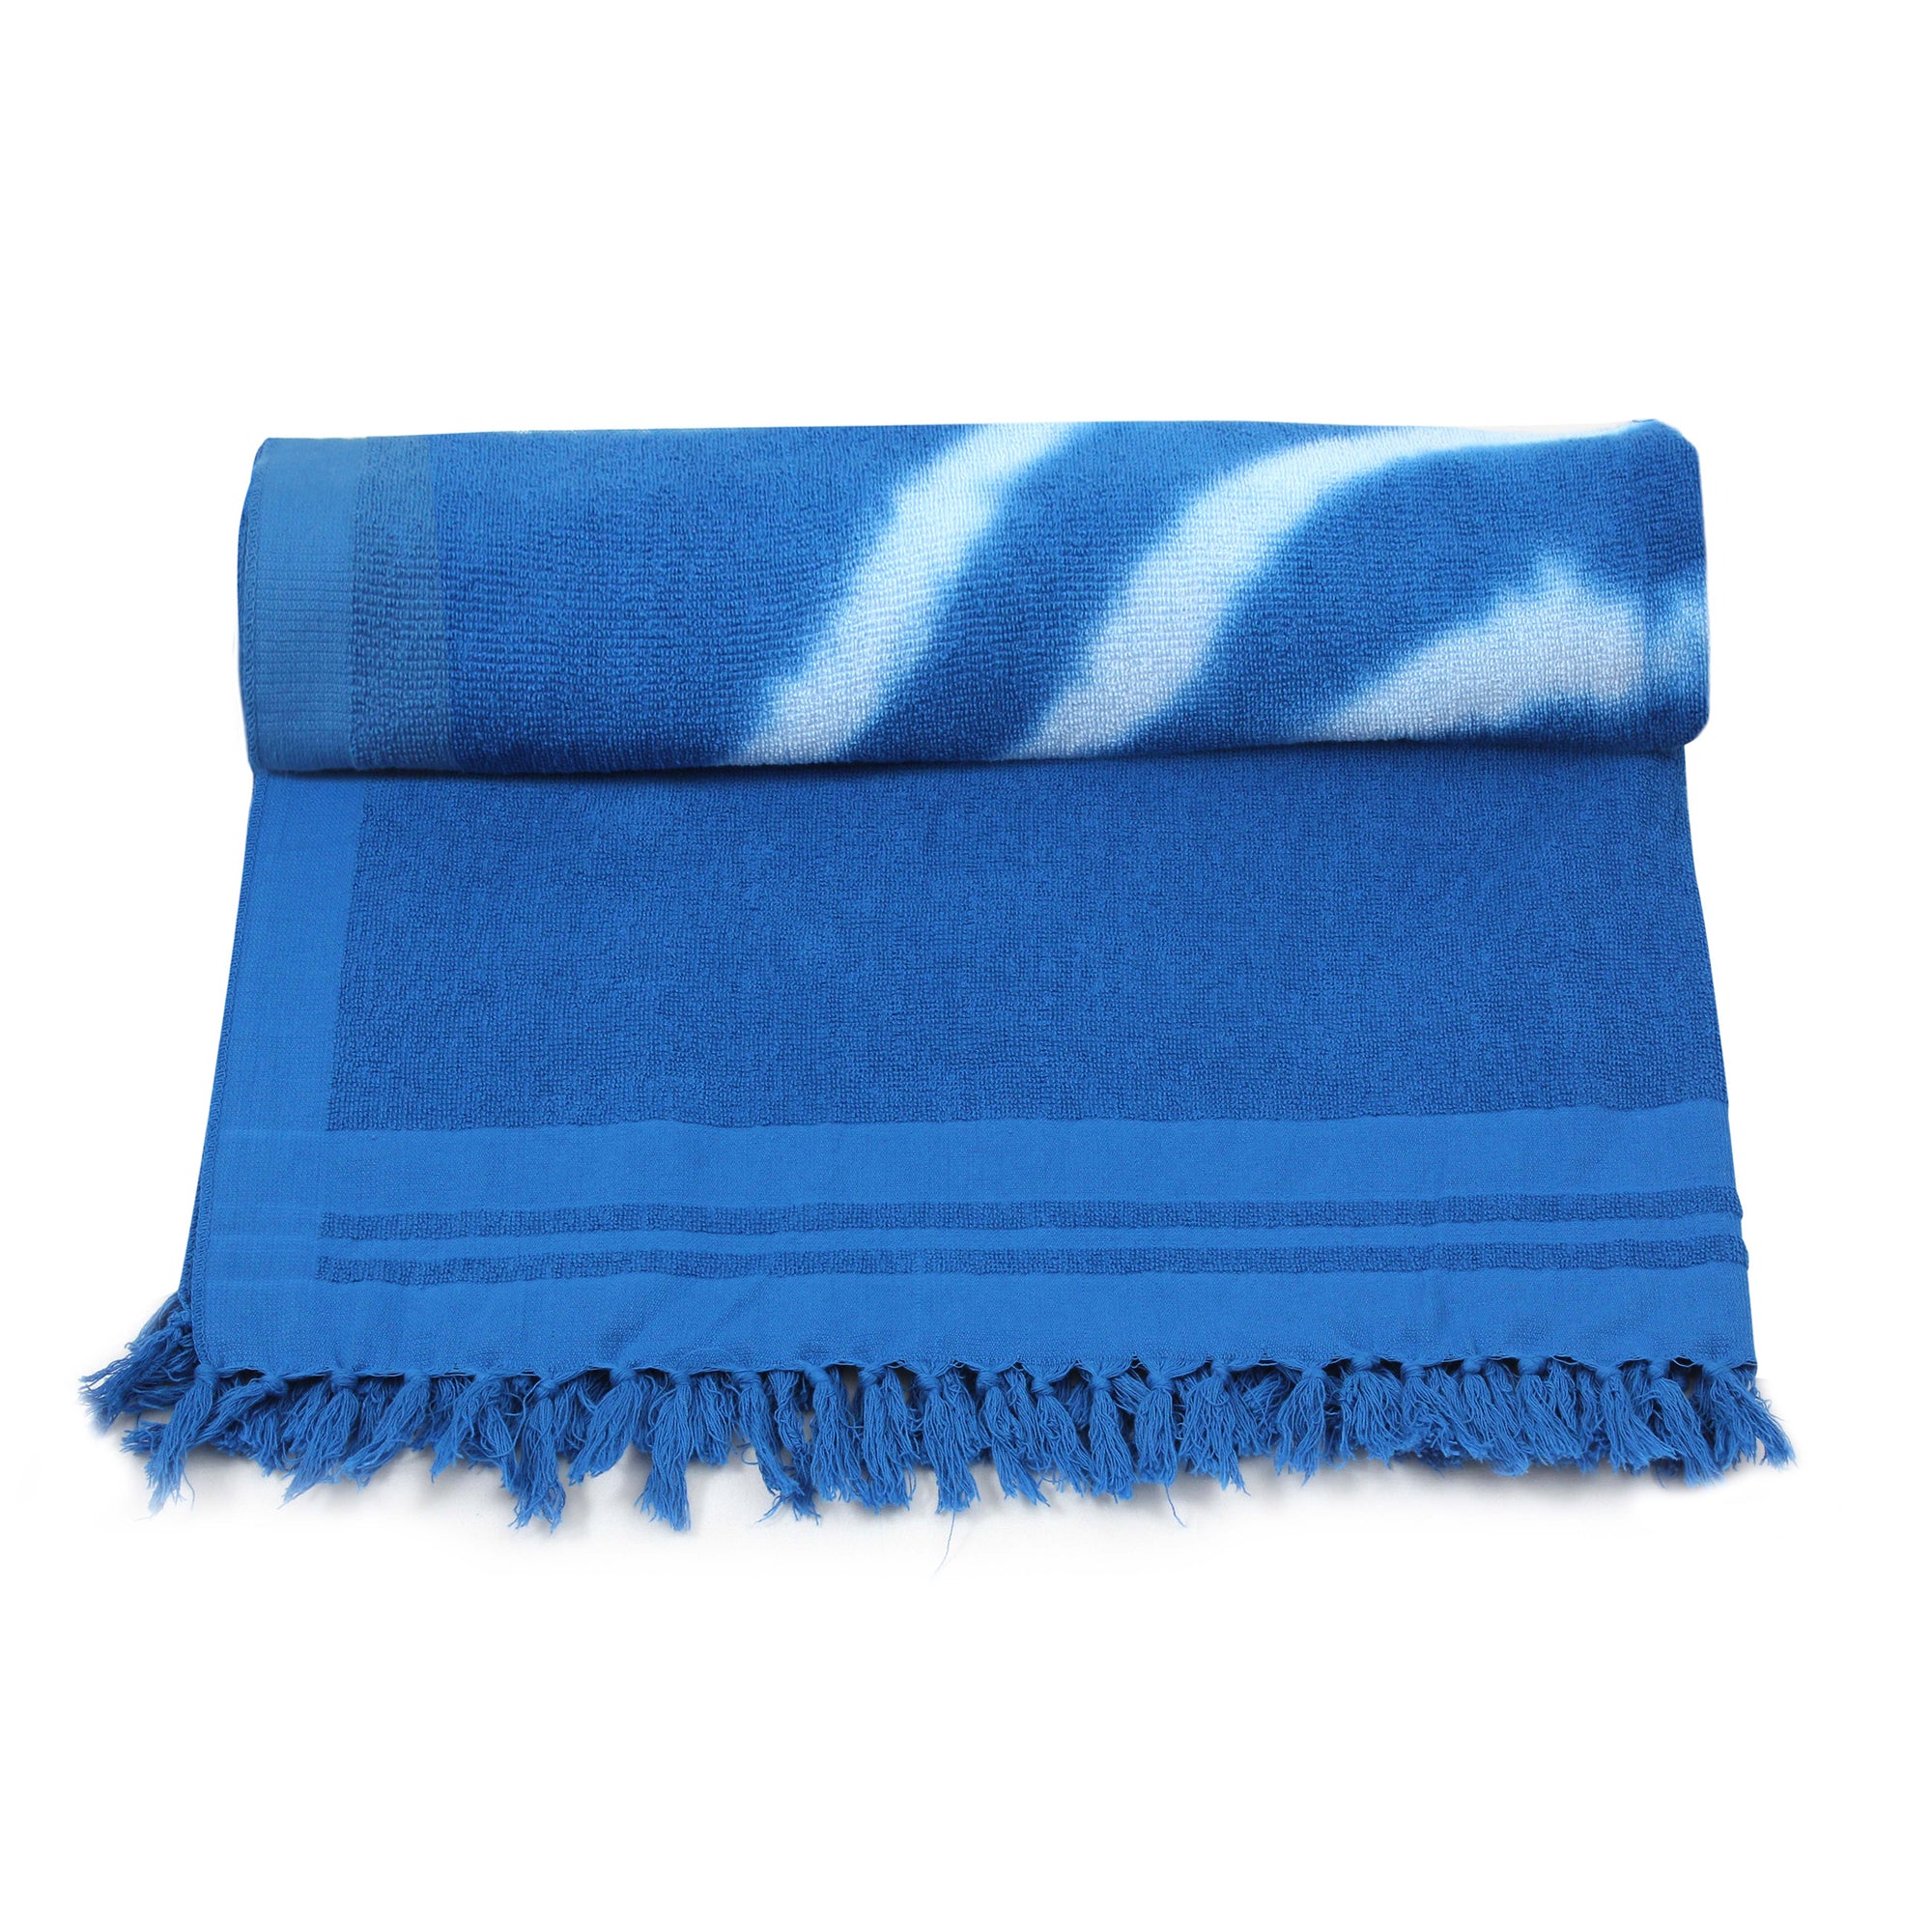 Blue/White Circles Tie Dye Beach Towel